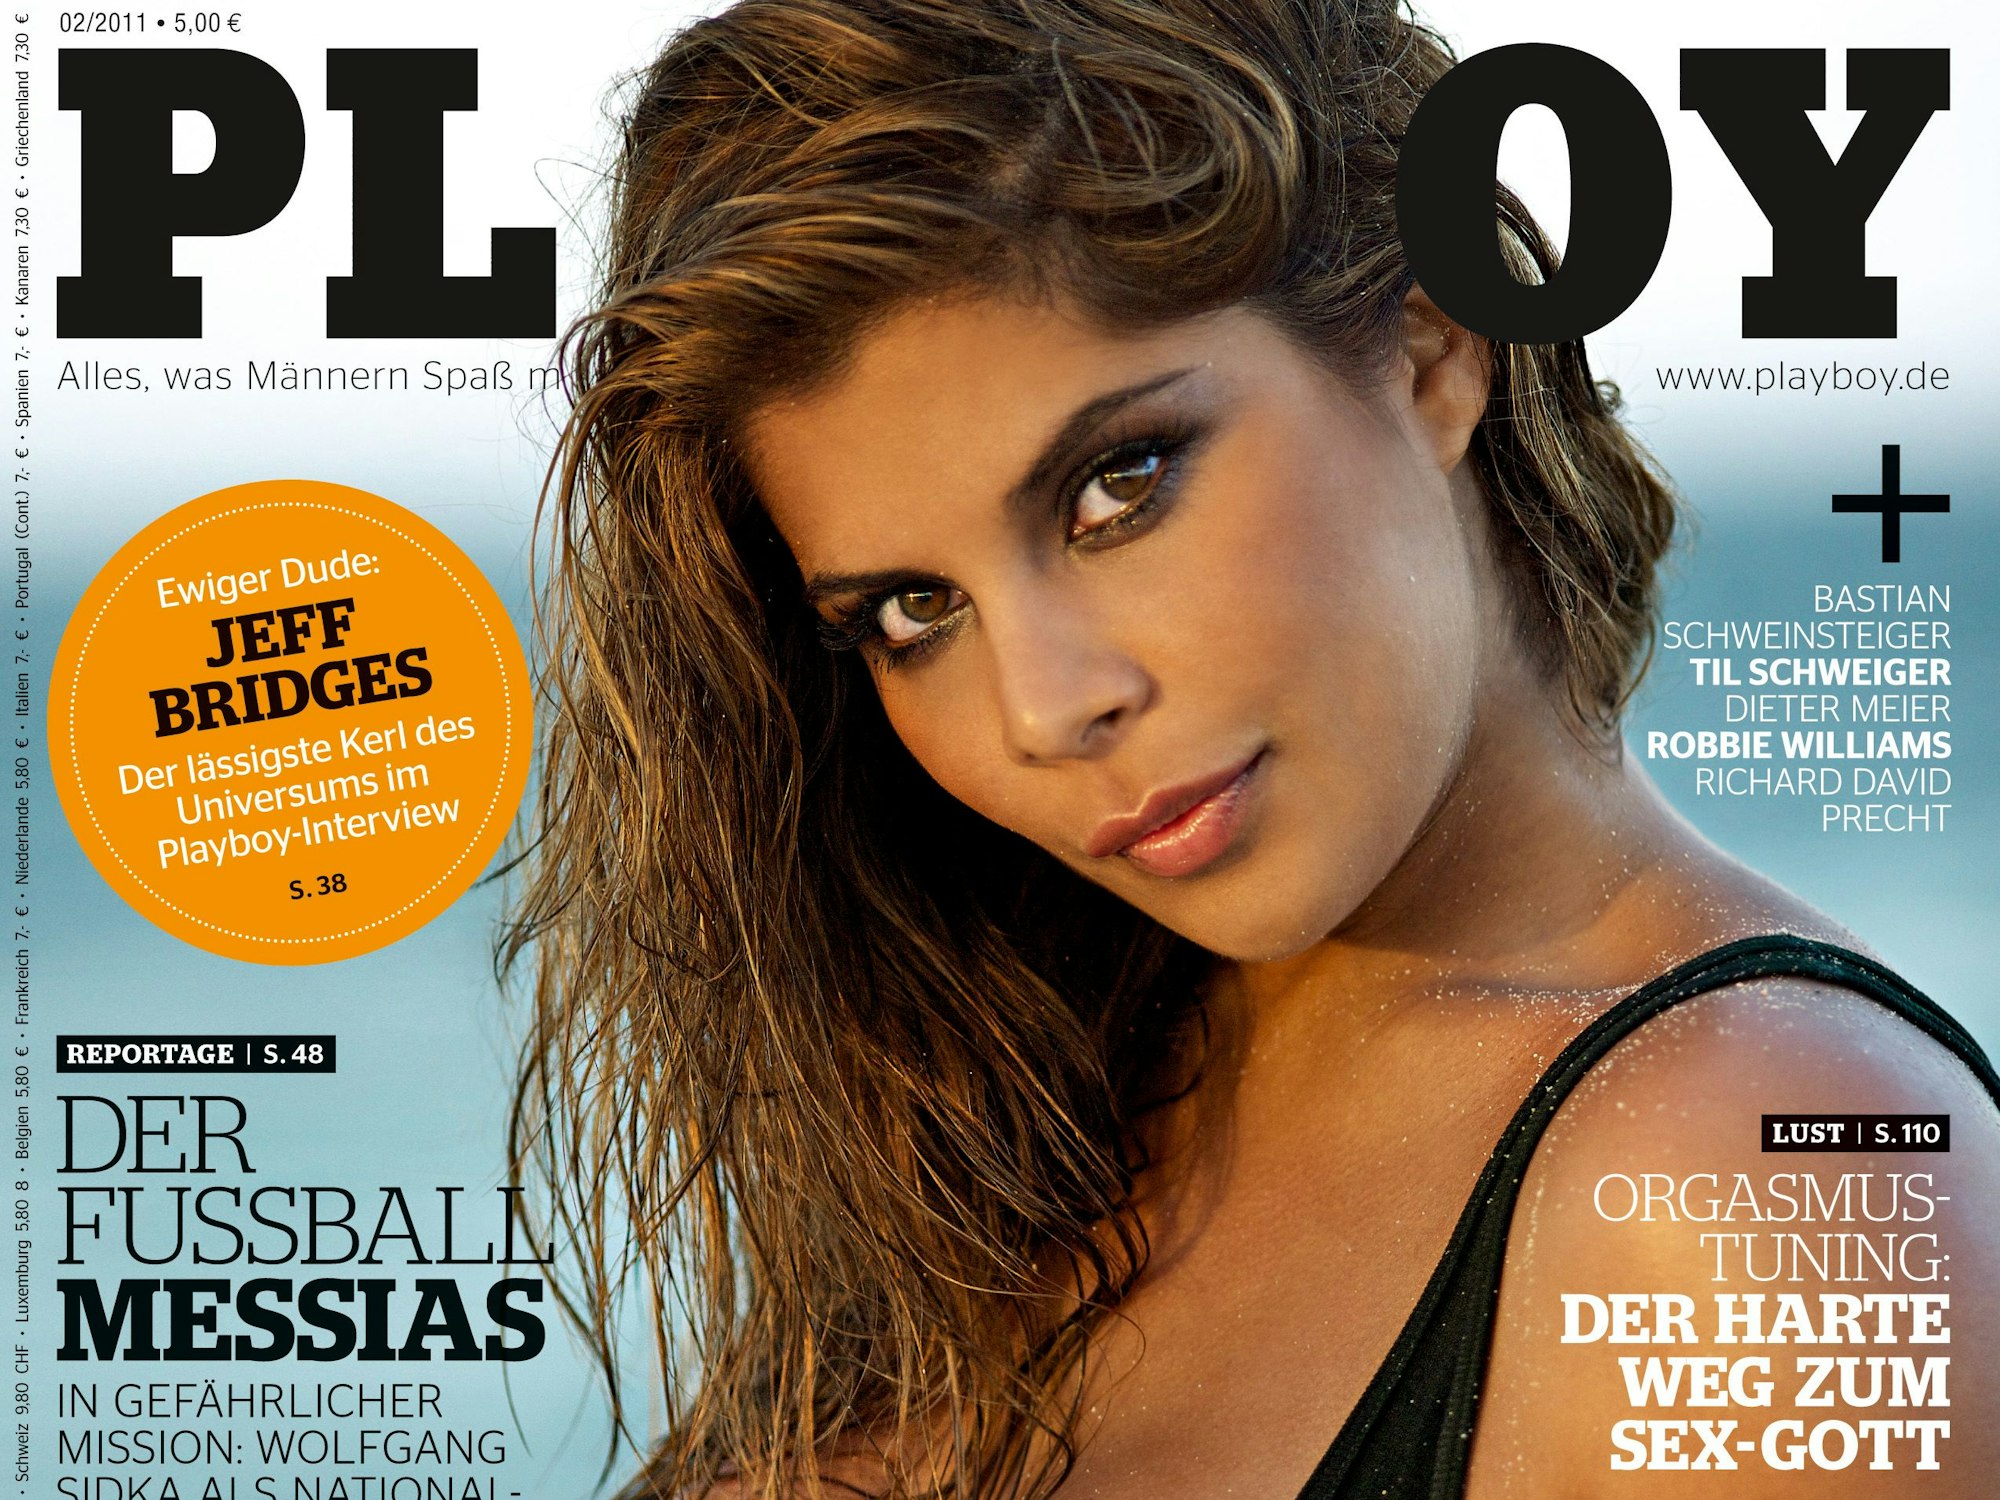 Indira Weiß, hier auf dem Playboy-Cover vom Februar 2011.